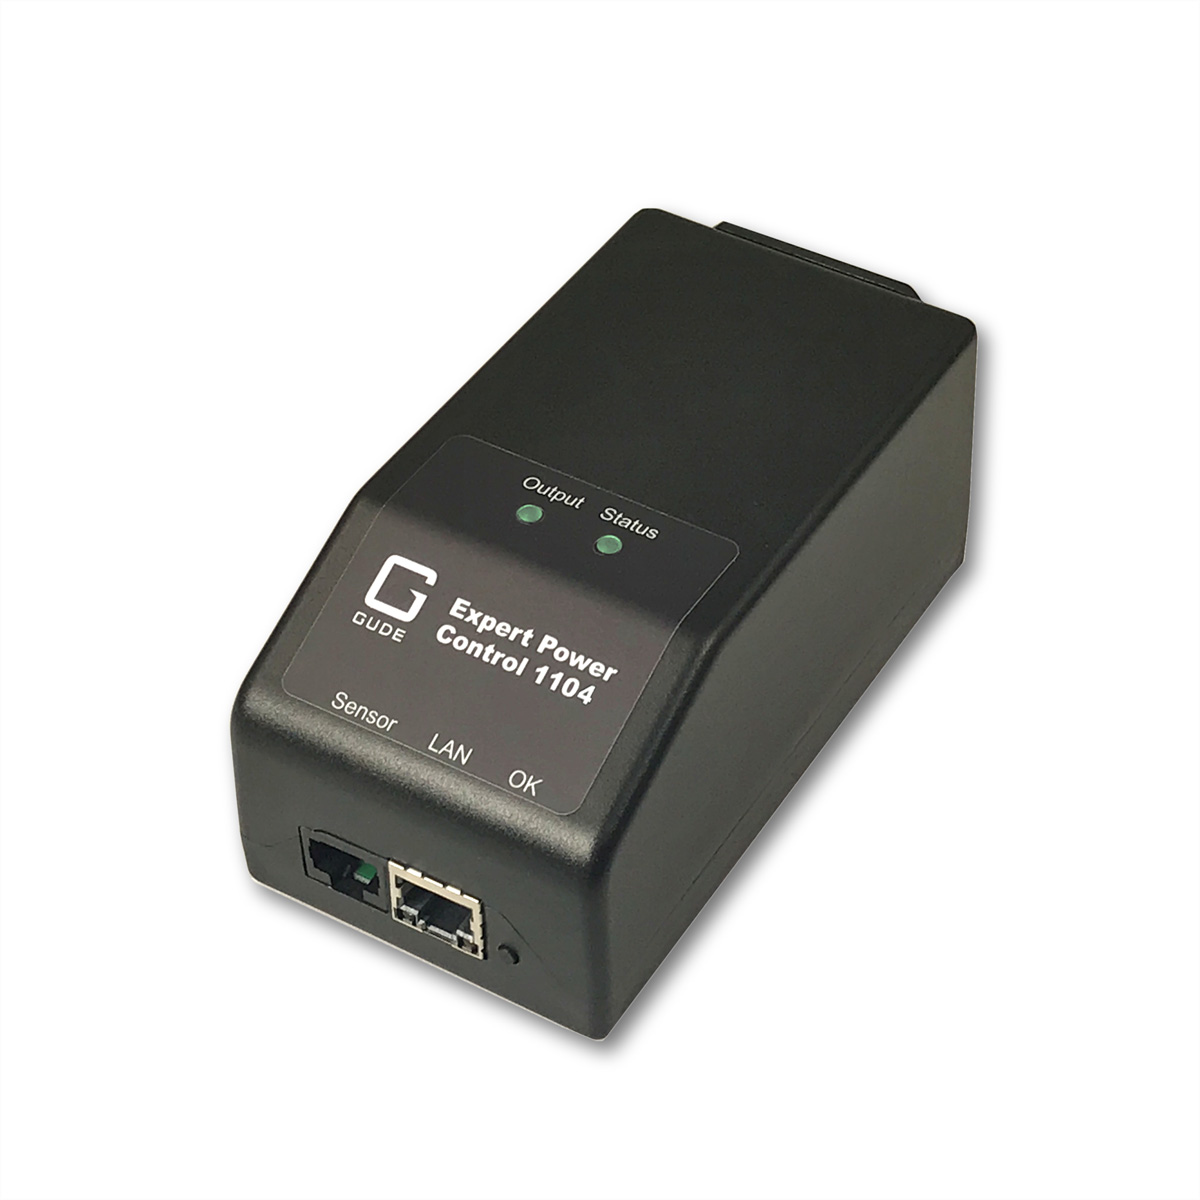 GUDE 11042 EPC NET IP-Fernschaltsteckdose, IEC-Anschluss, Sensorport